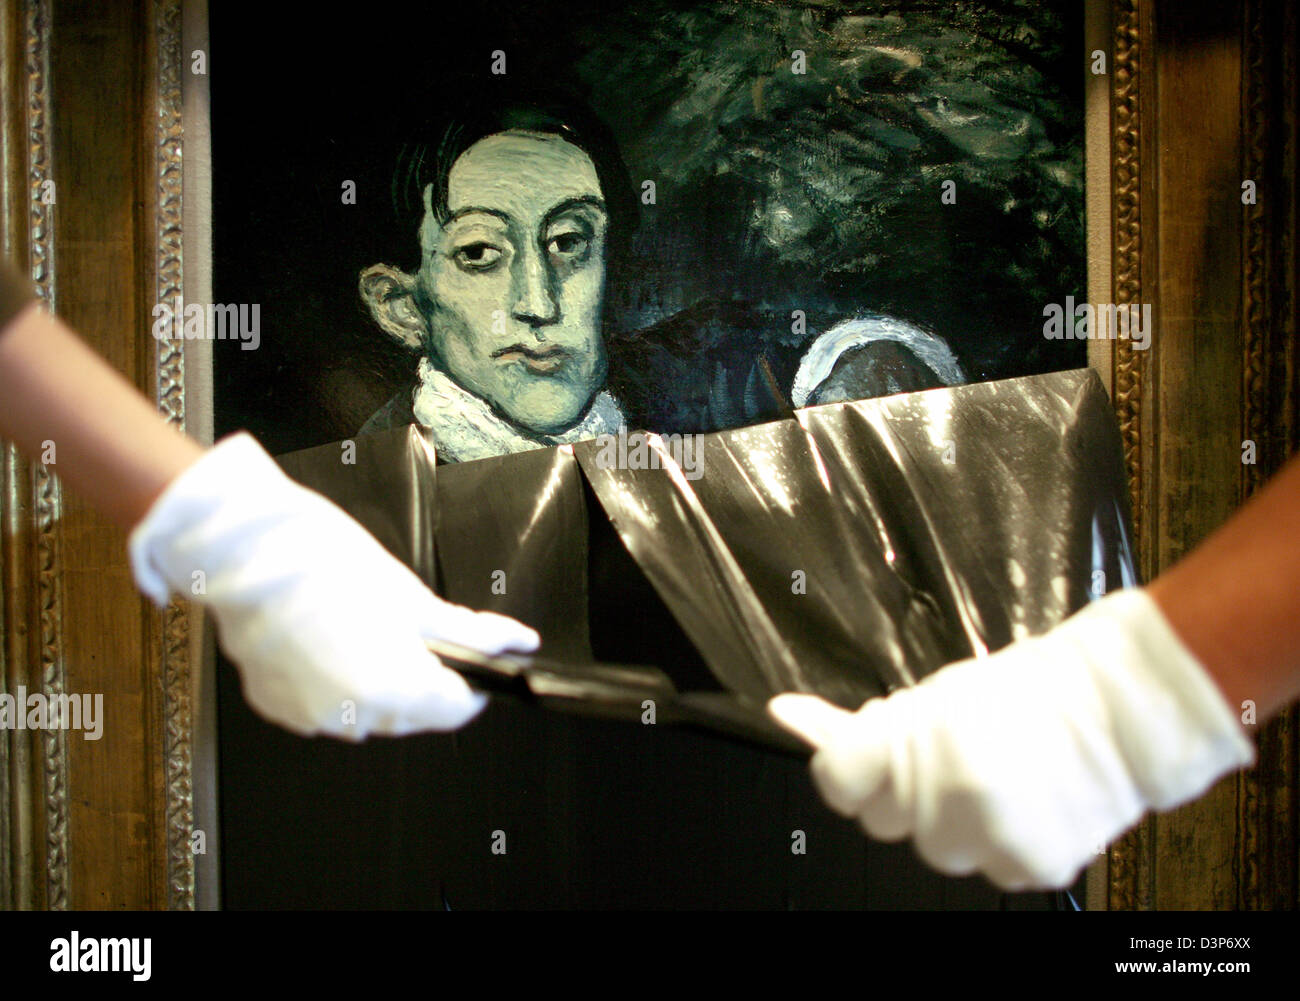 Employés de maison de vente aux enchères Christie's présente son 'Portrait d'Angel Fernandez de Soto" au musée romain-germanique de Cologne, en Allemagne, mercredi 20 septembre 2006. Christie's expose la peinture au musée à partir du 21 septembre jusqu'au 23 septembre 2006. Le tableau provient de la période bleue de Picasso (1901±1904) et fait partie d'Andrew Lloyd Webber's art collection. Banque D'Images